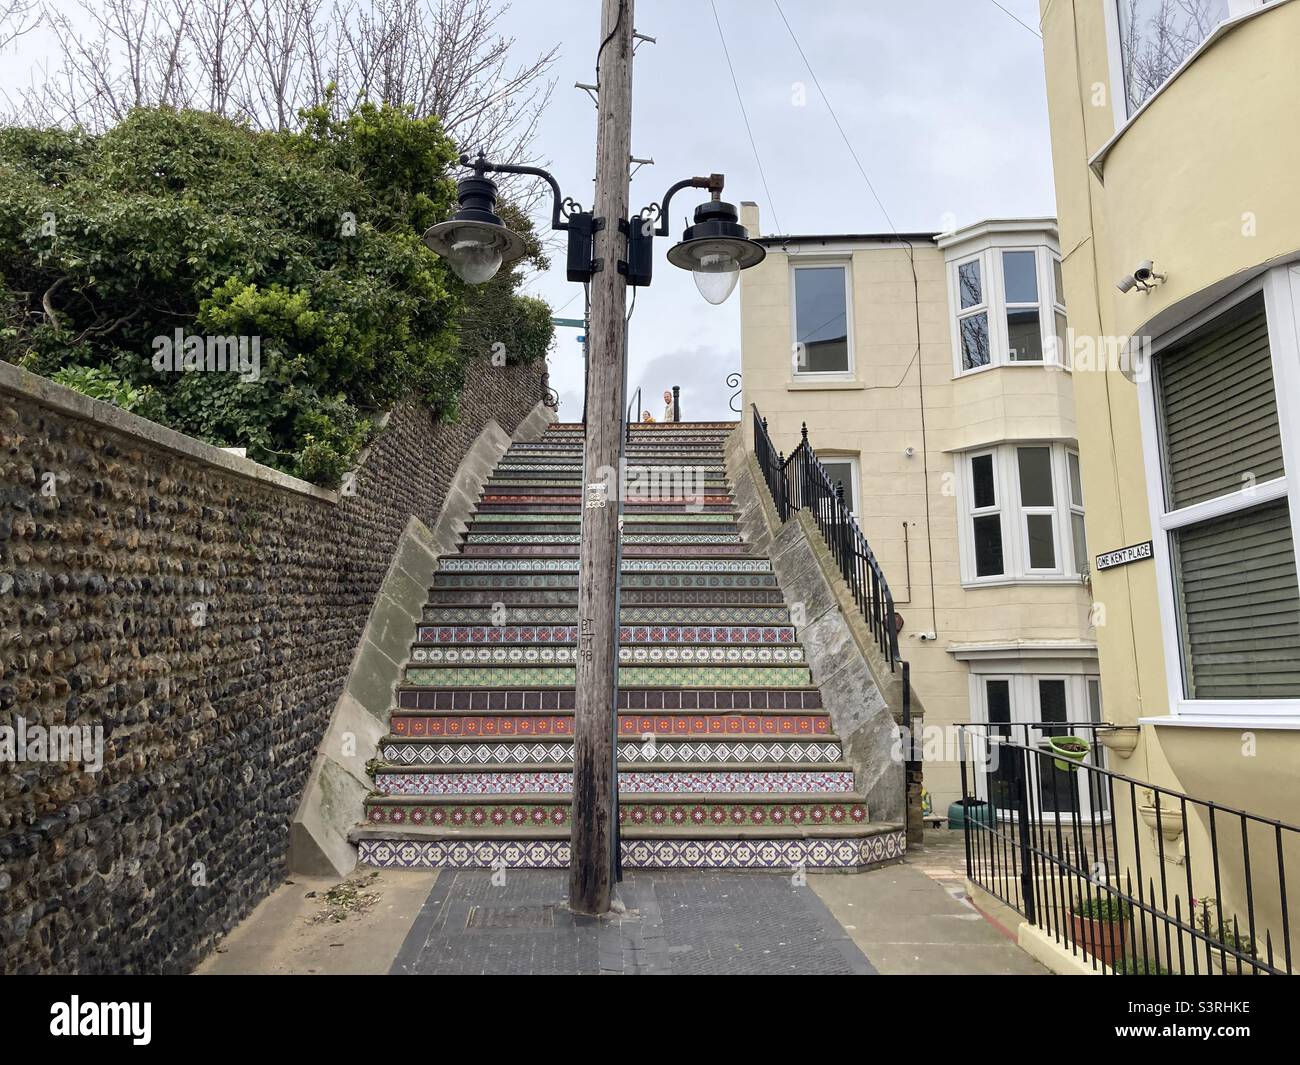 800 tuiles inspirées de Pugin installées sur des marches à Ramsgate, Kent Banque D'Images